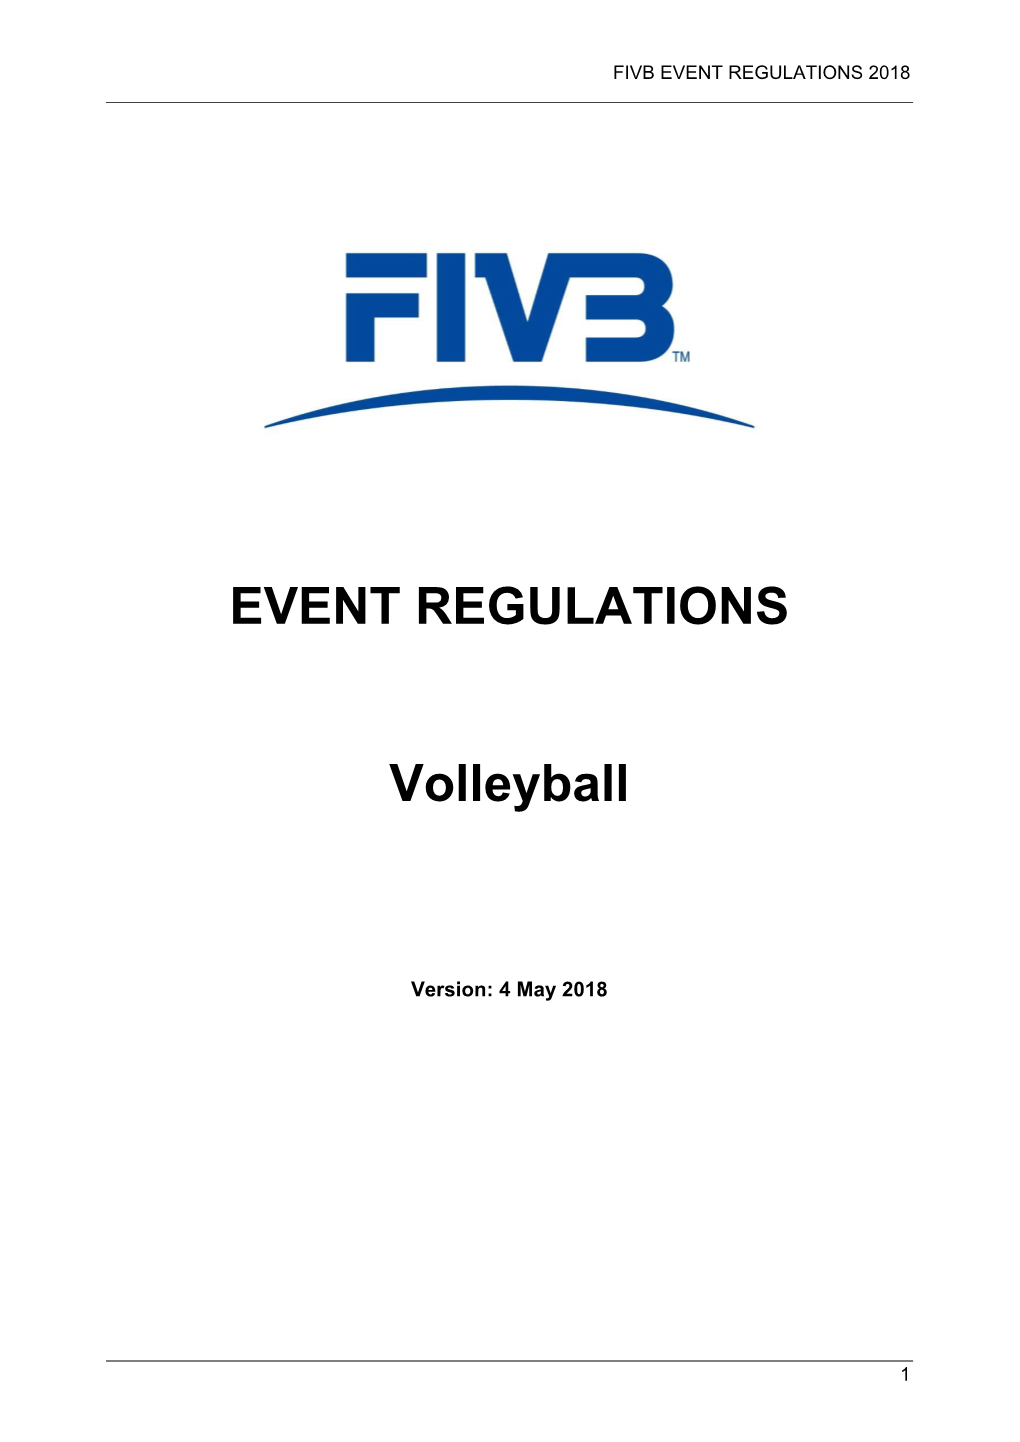 EVENT REGULATIONS Volleyball